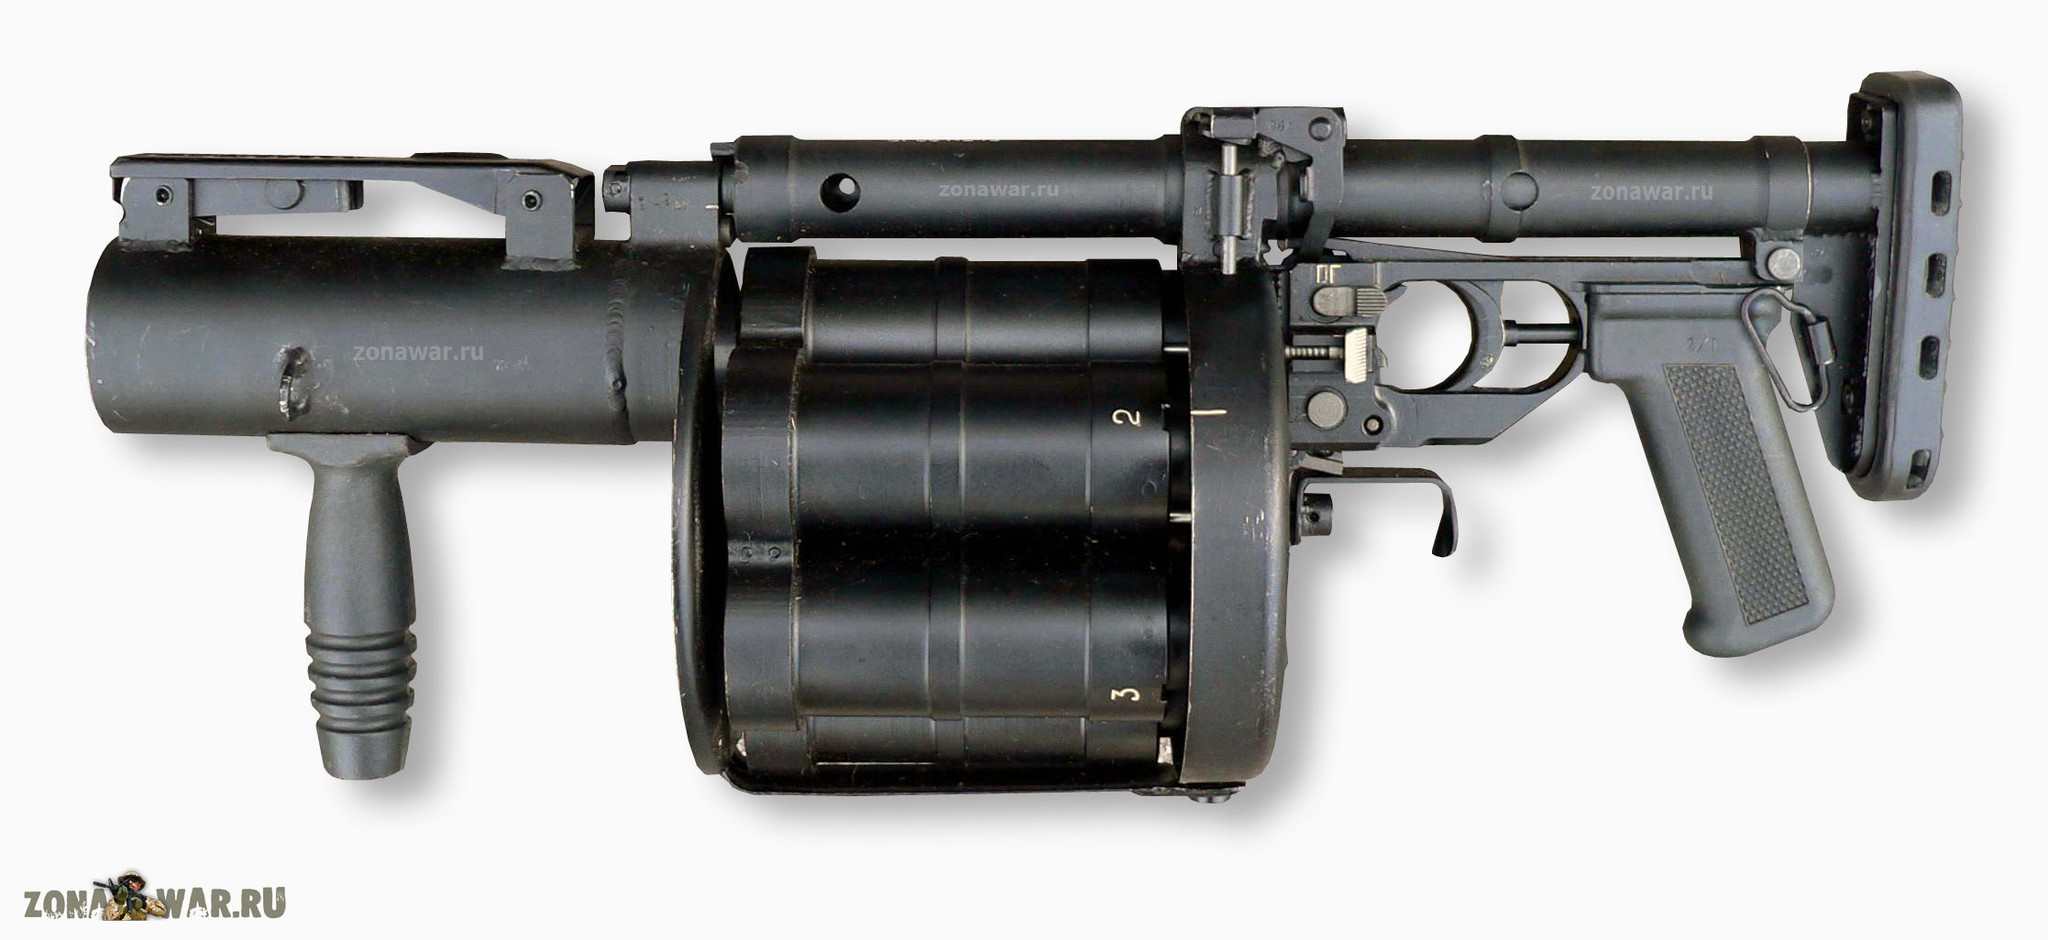 6G30 revolve grenade launcher